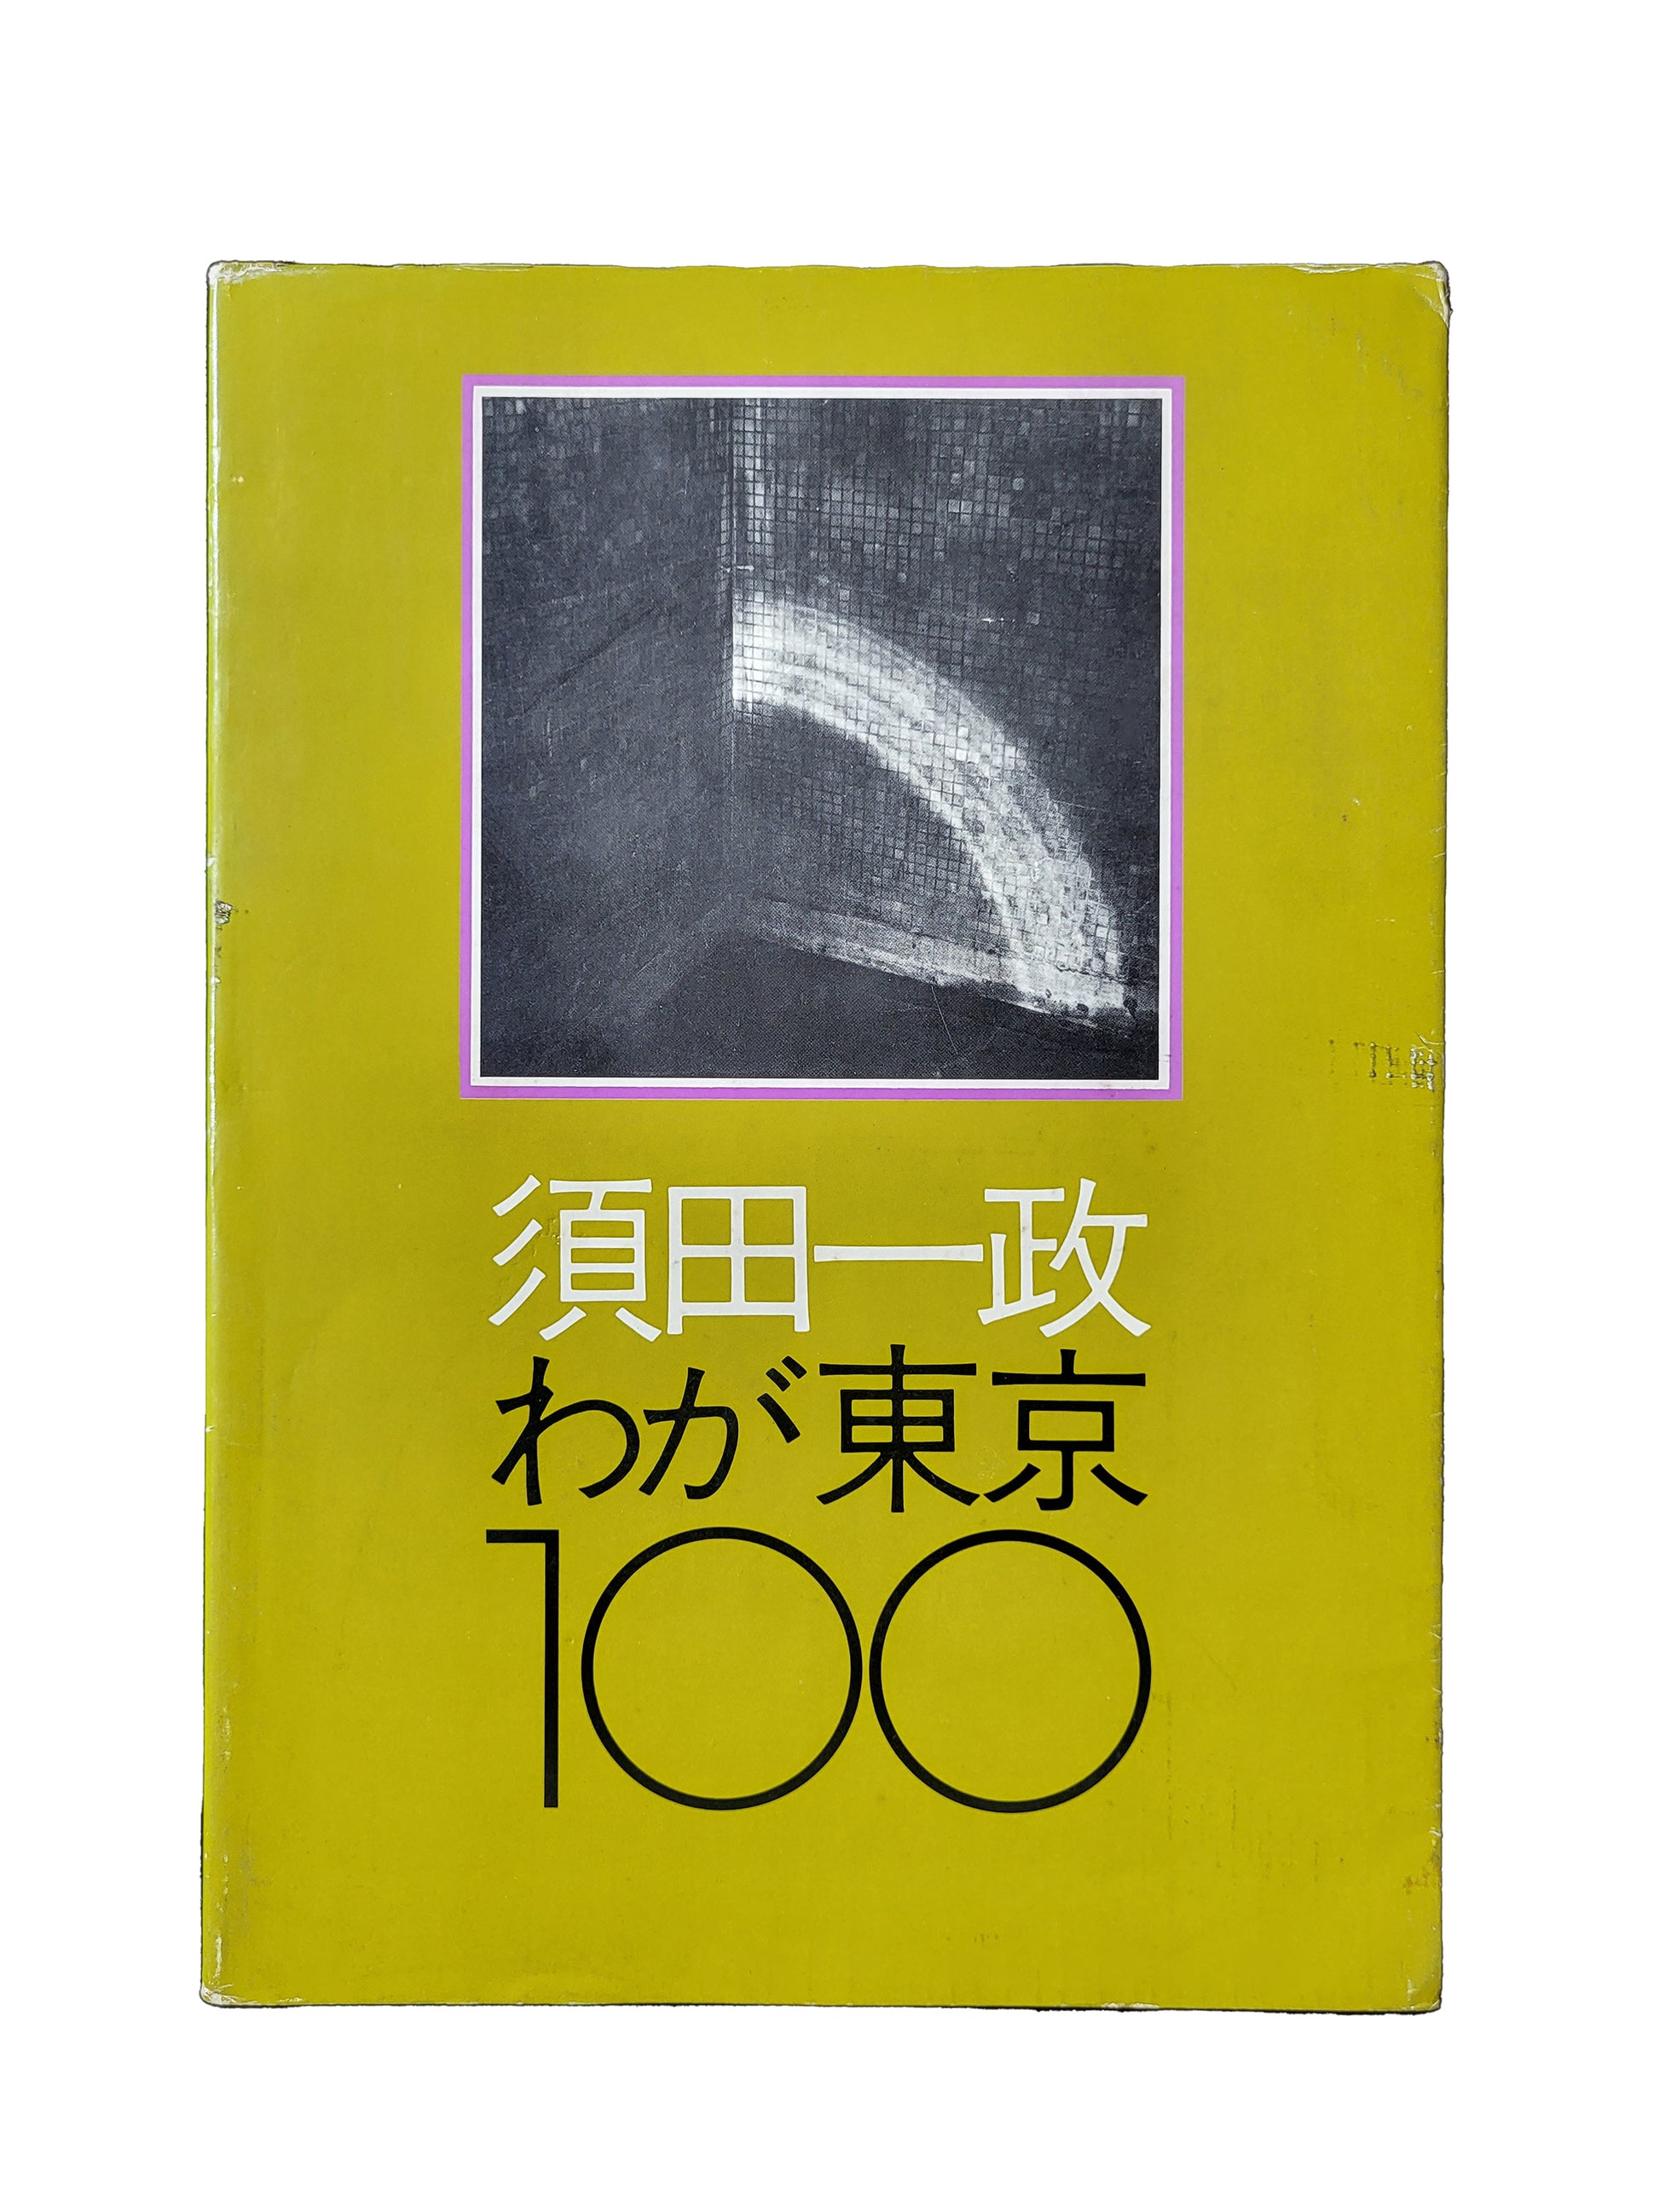 須田一政 東京100